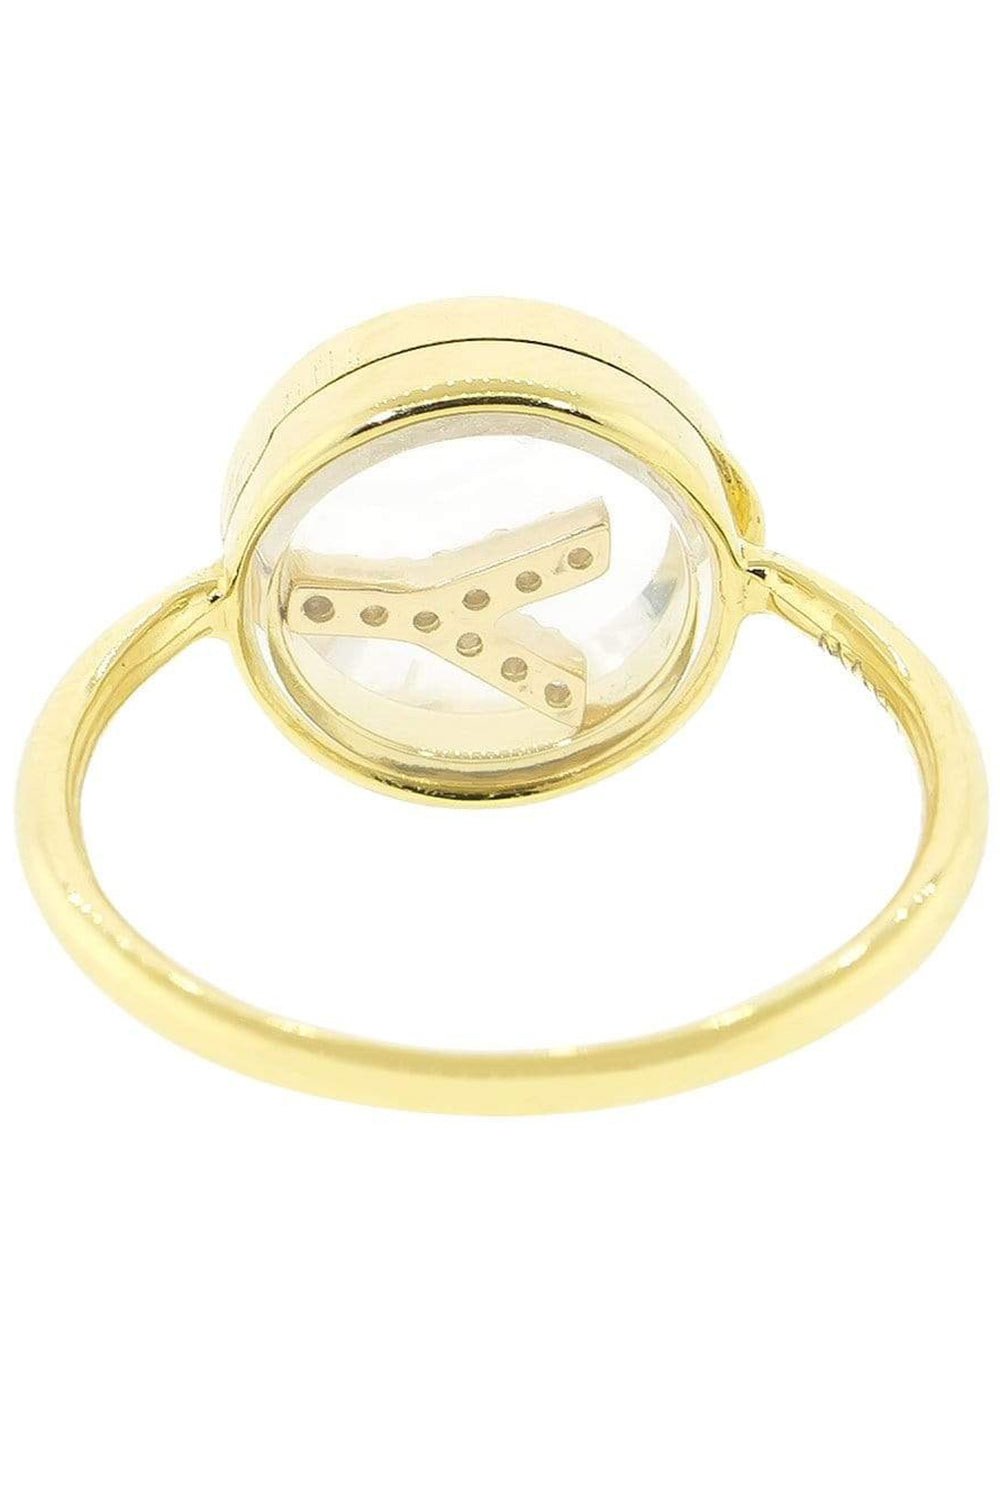 MORITZ GLIK-Y Initial Shaker Ring-YELLOW GOLD